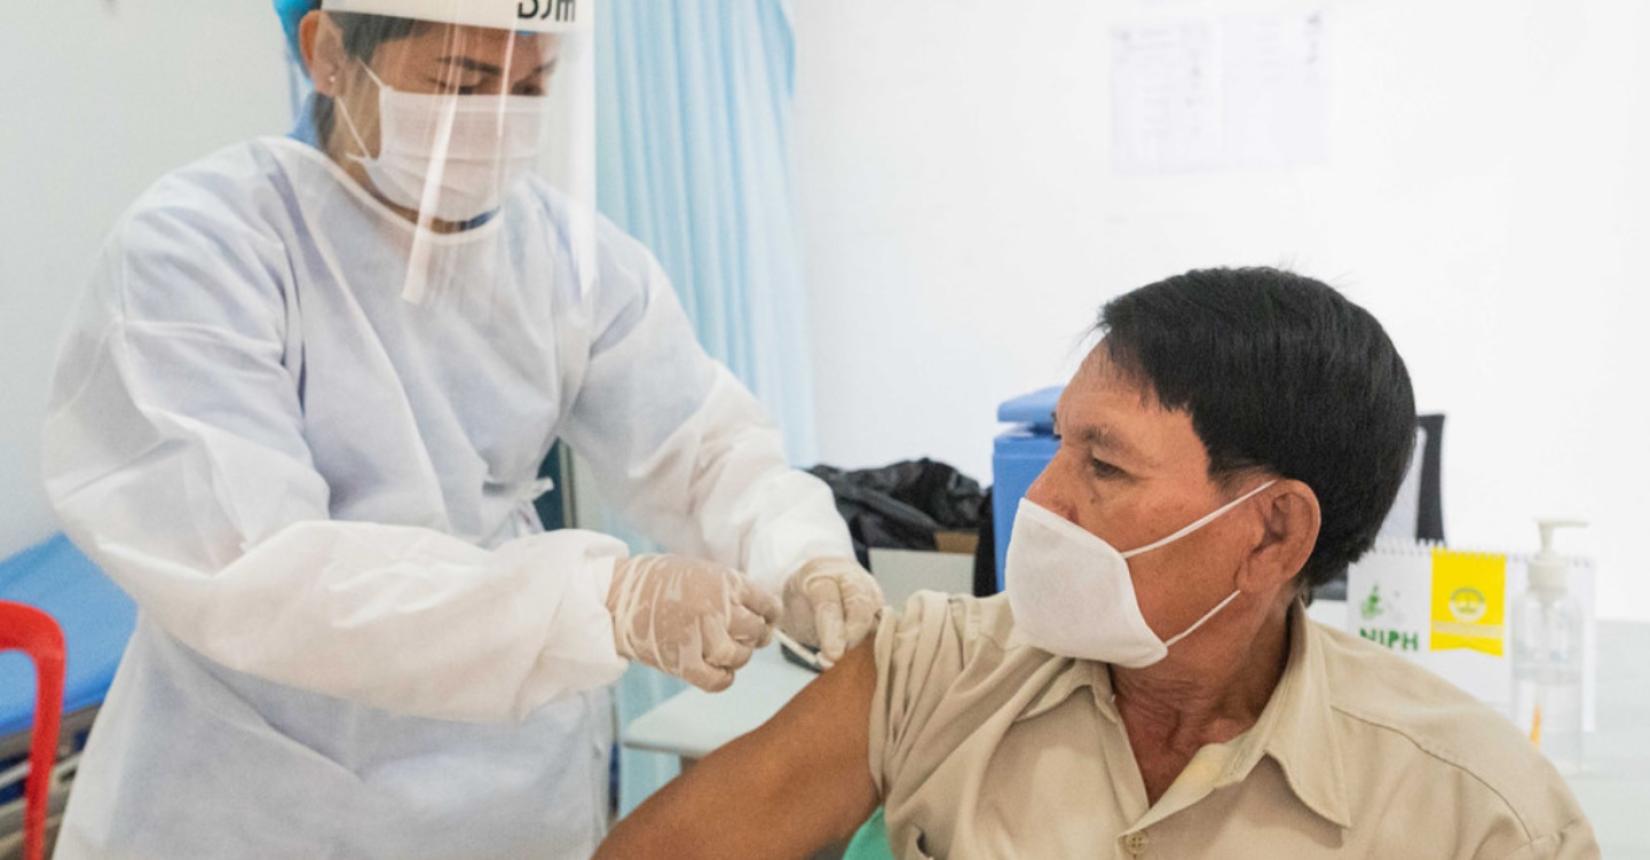 Em março, equipes do UNICEF e OMS visitaram hospitais em Phonom Penh, capital do Camboja, para avaliar o progresso da vacinação contra a COVID-19, que está sendo feita através do COVAX.